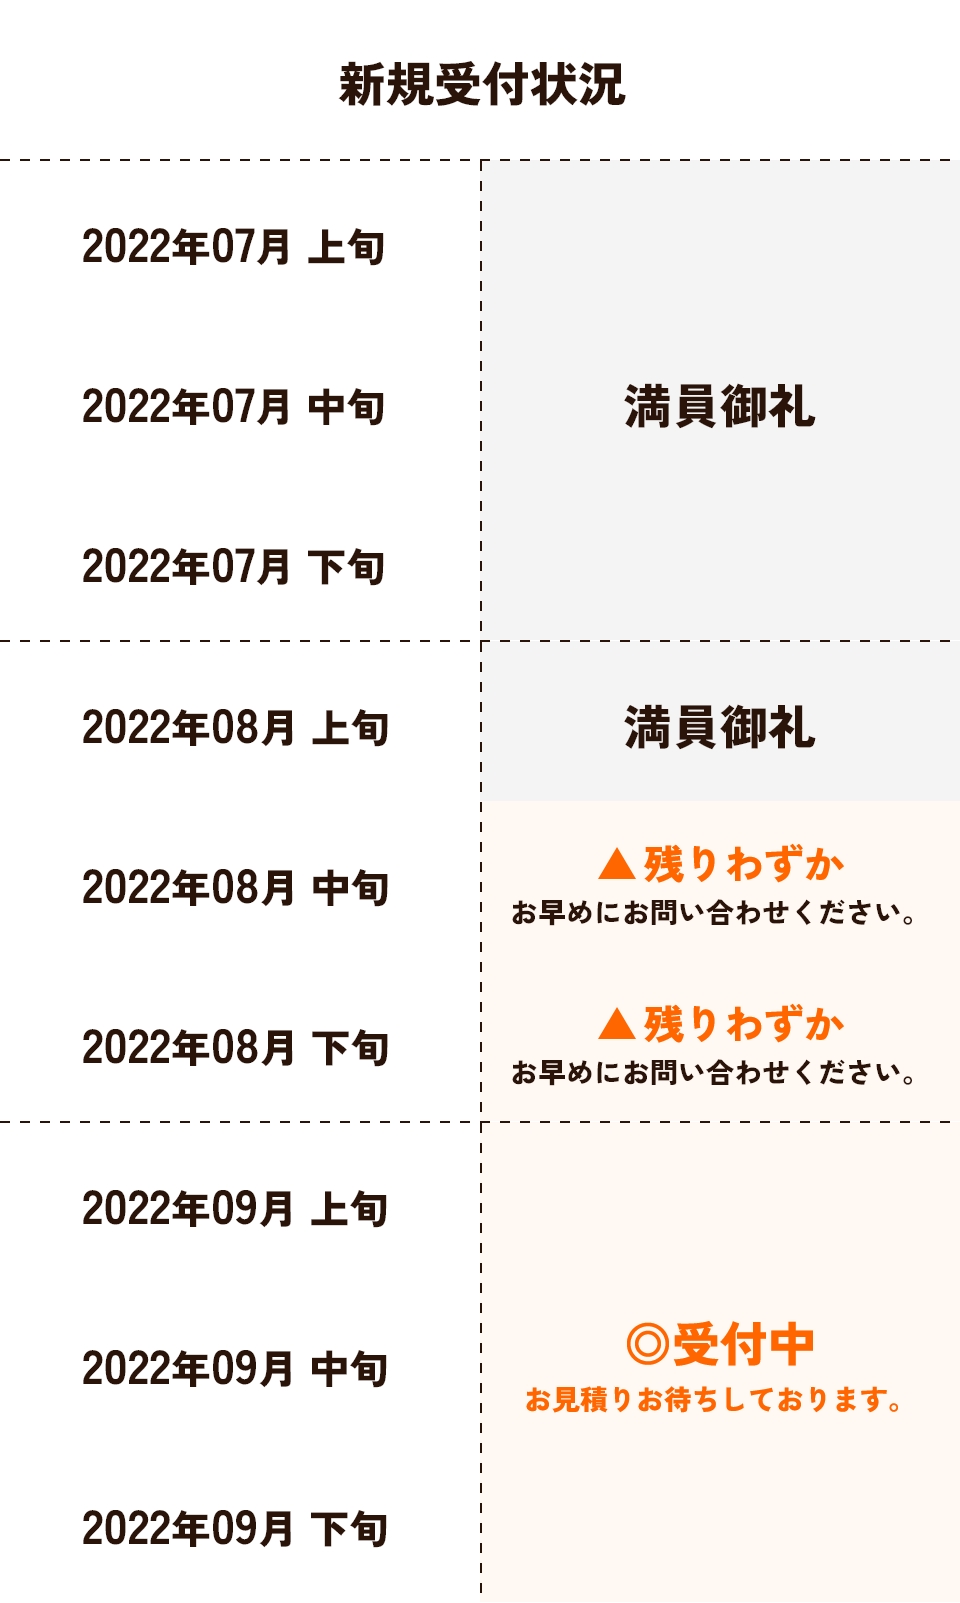 2022年7月〜9月の新規受付状況一覧